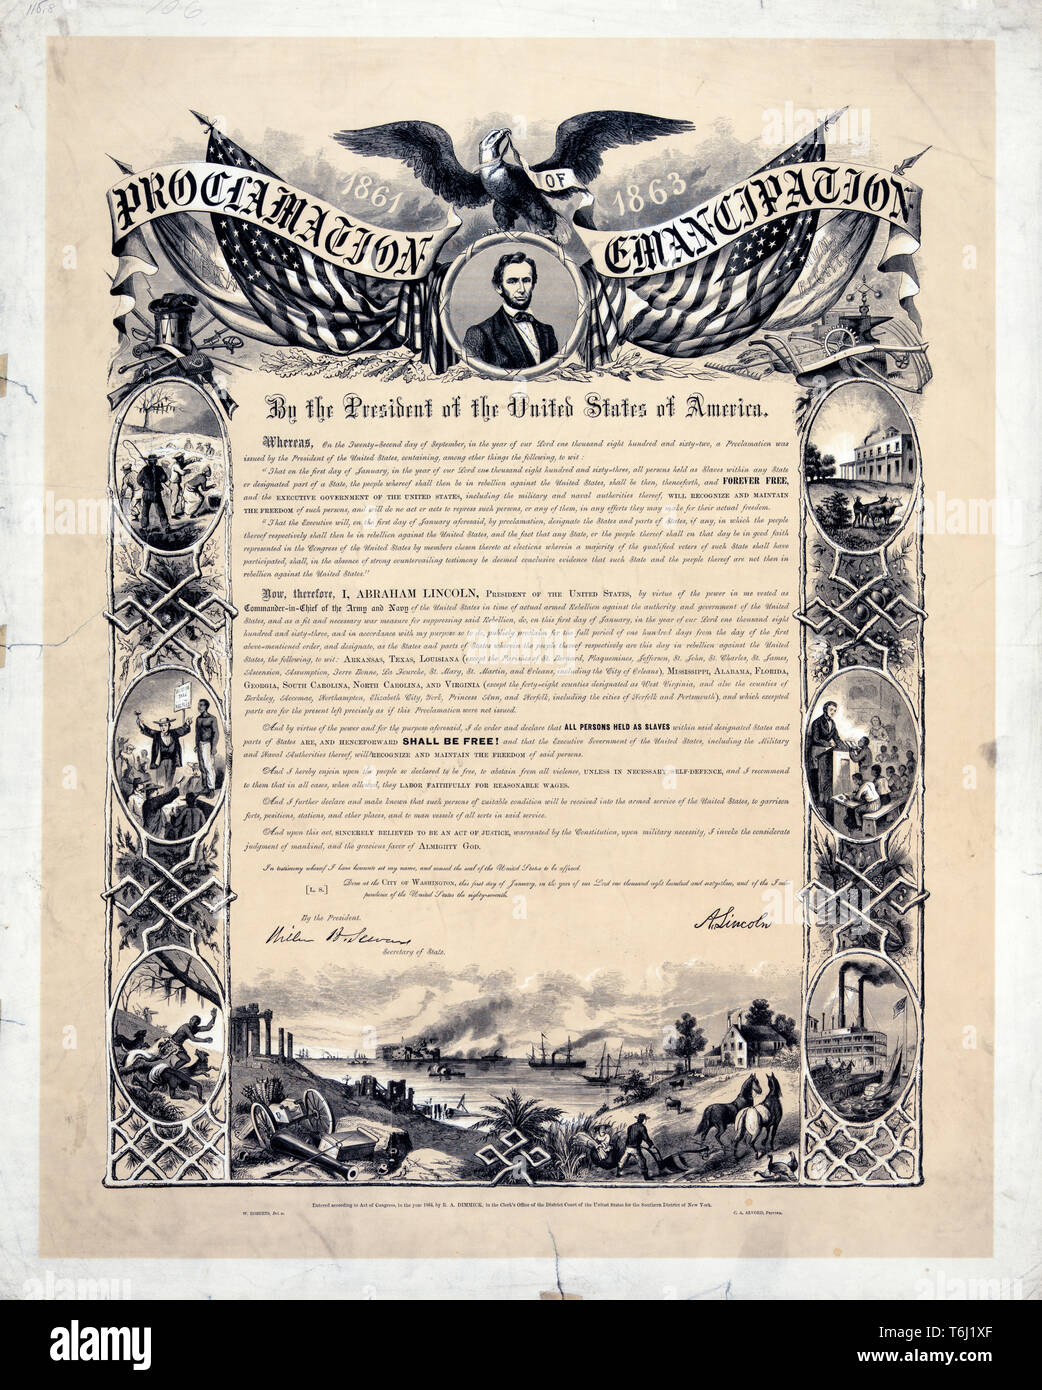 Proclamation d'émancipation, le 1er janvier 1863 document par le président des États-Unis d'Amérique montrant le texte avec les illustrations, publié 1864 Banque D'Images